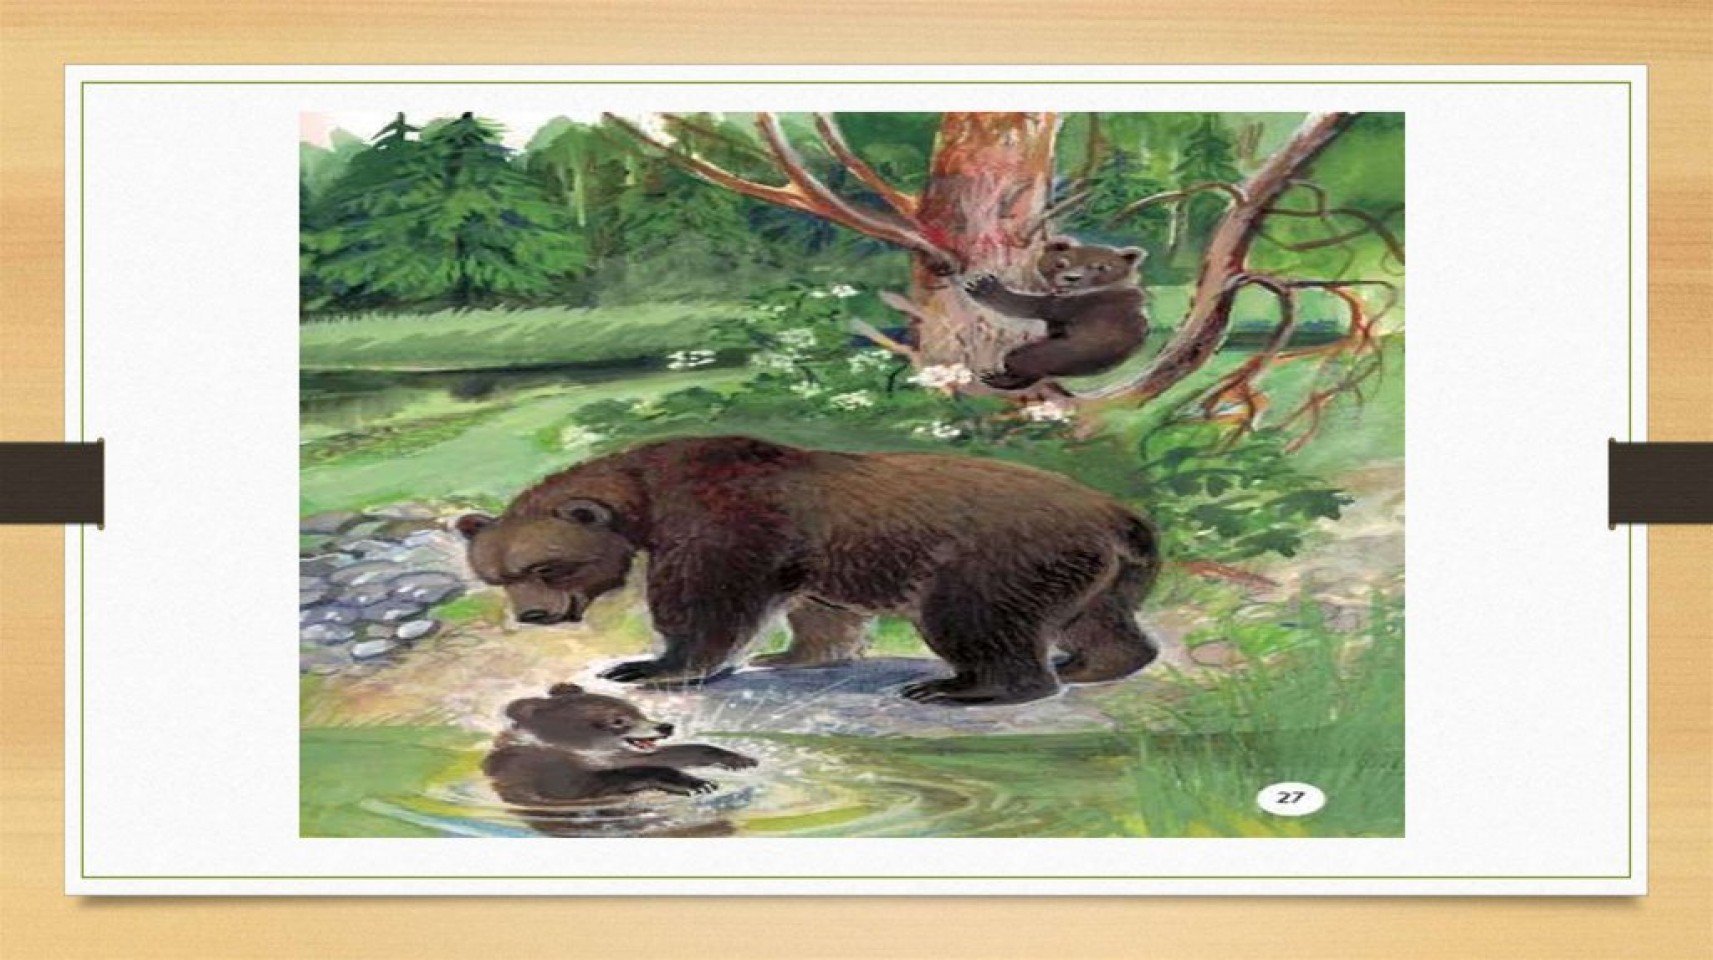 Бианки рассказы купание. Иллюстрации к рассказу купание медвежат Бианки. Картина купание медвежат Бианки.